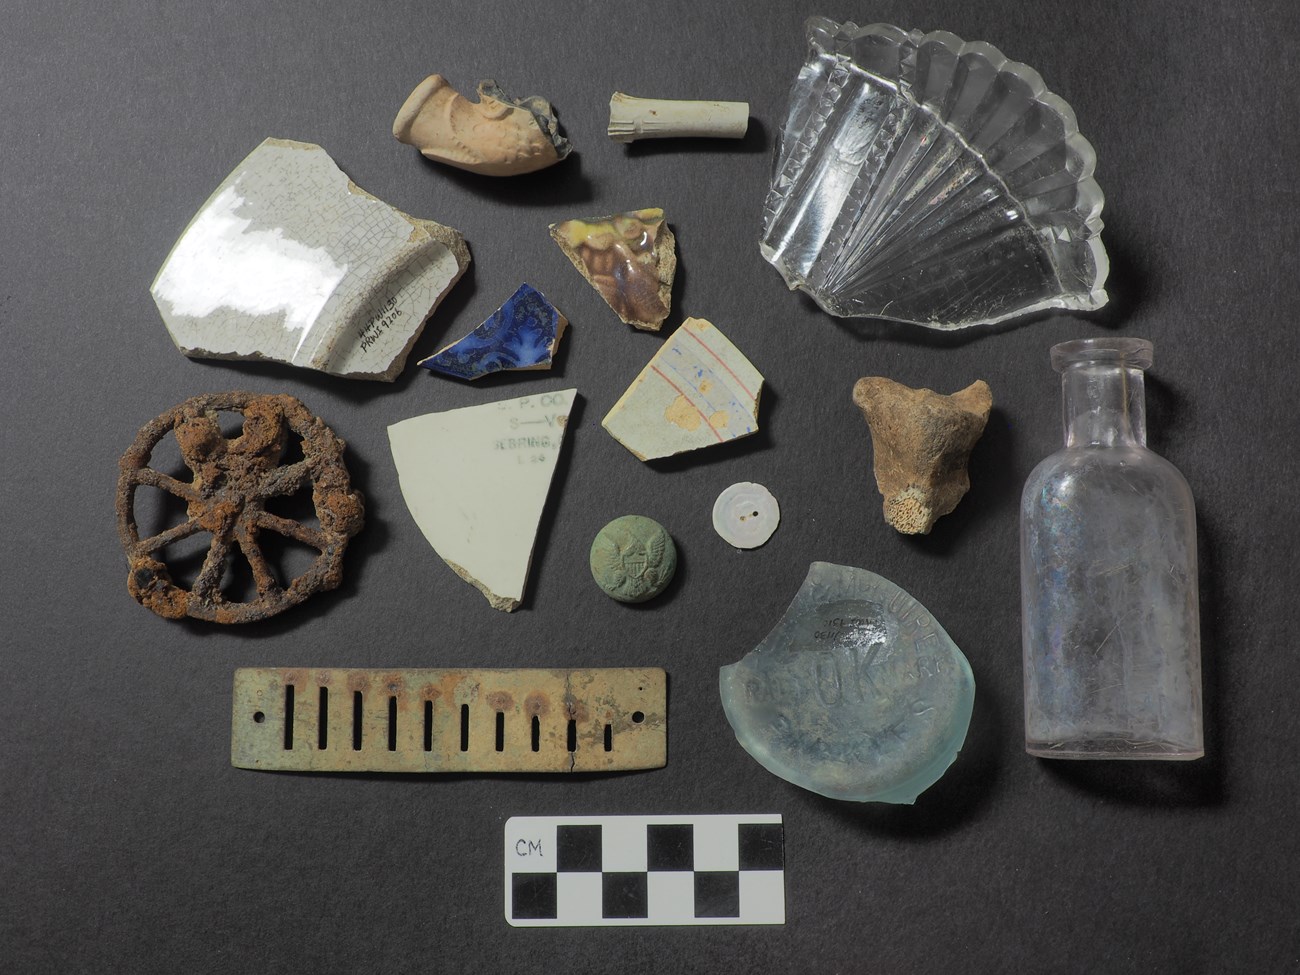 Artifacts in an arrangement